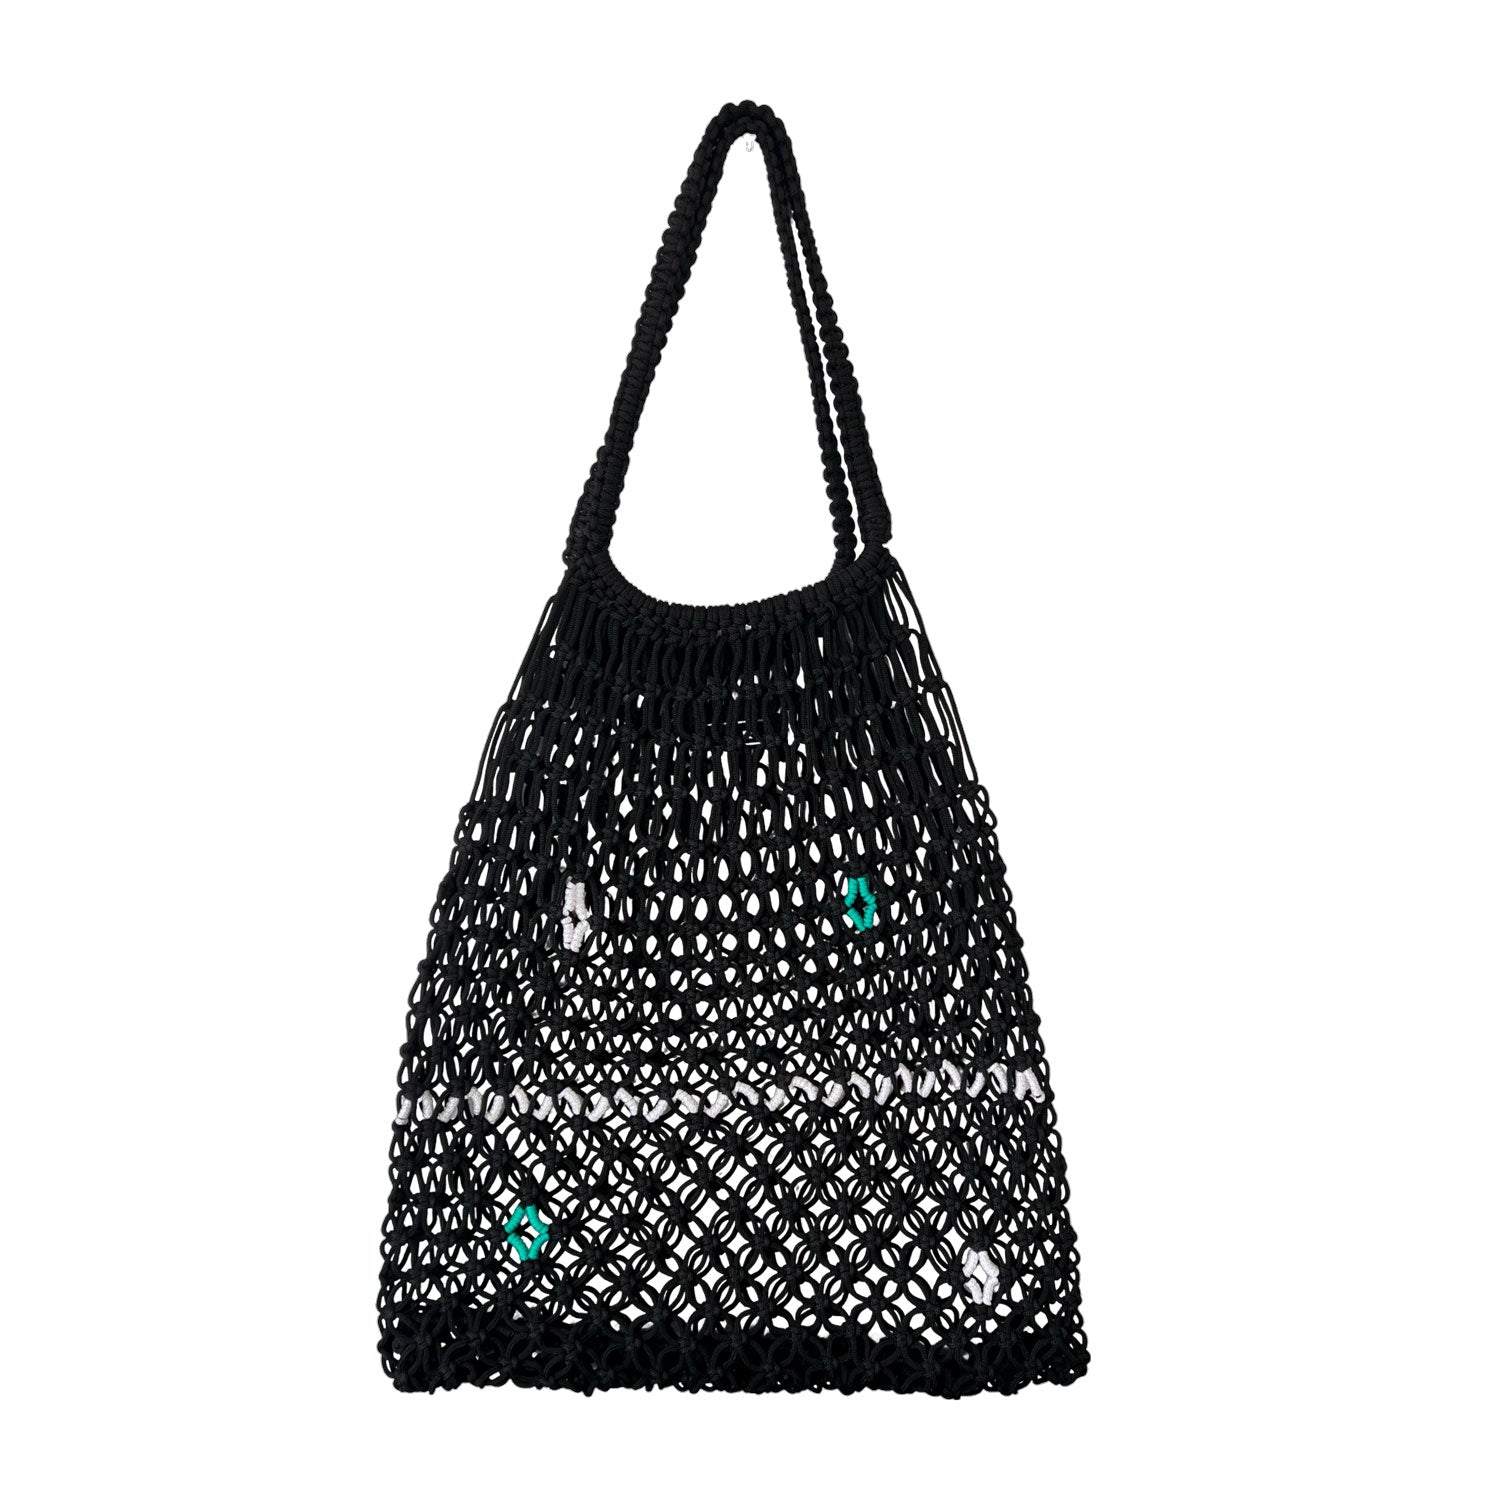 Crochet Tote Handbag in Black